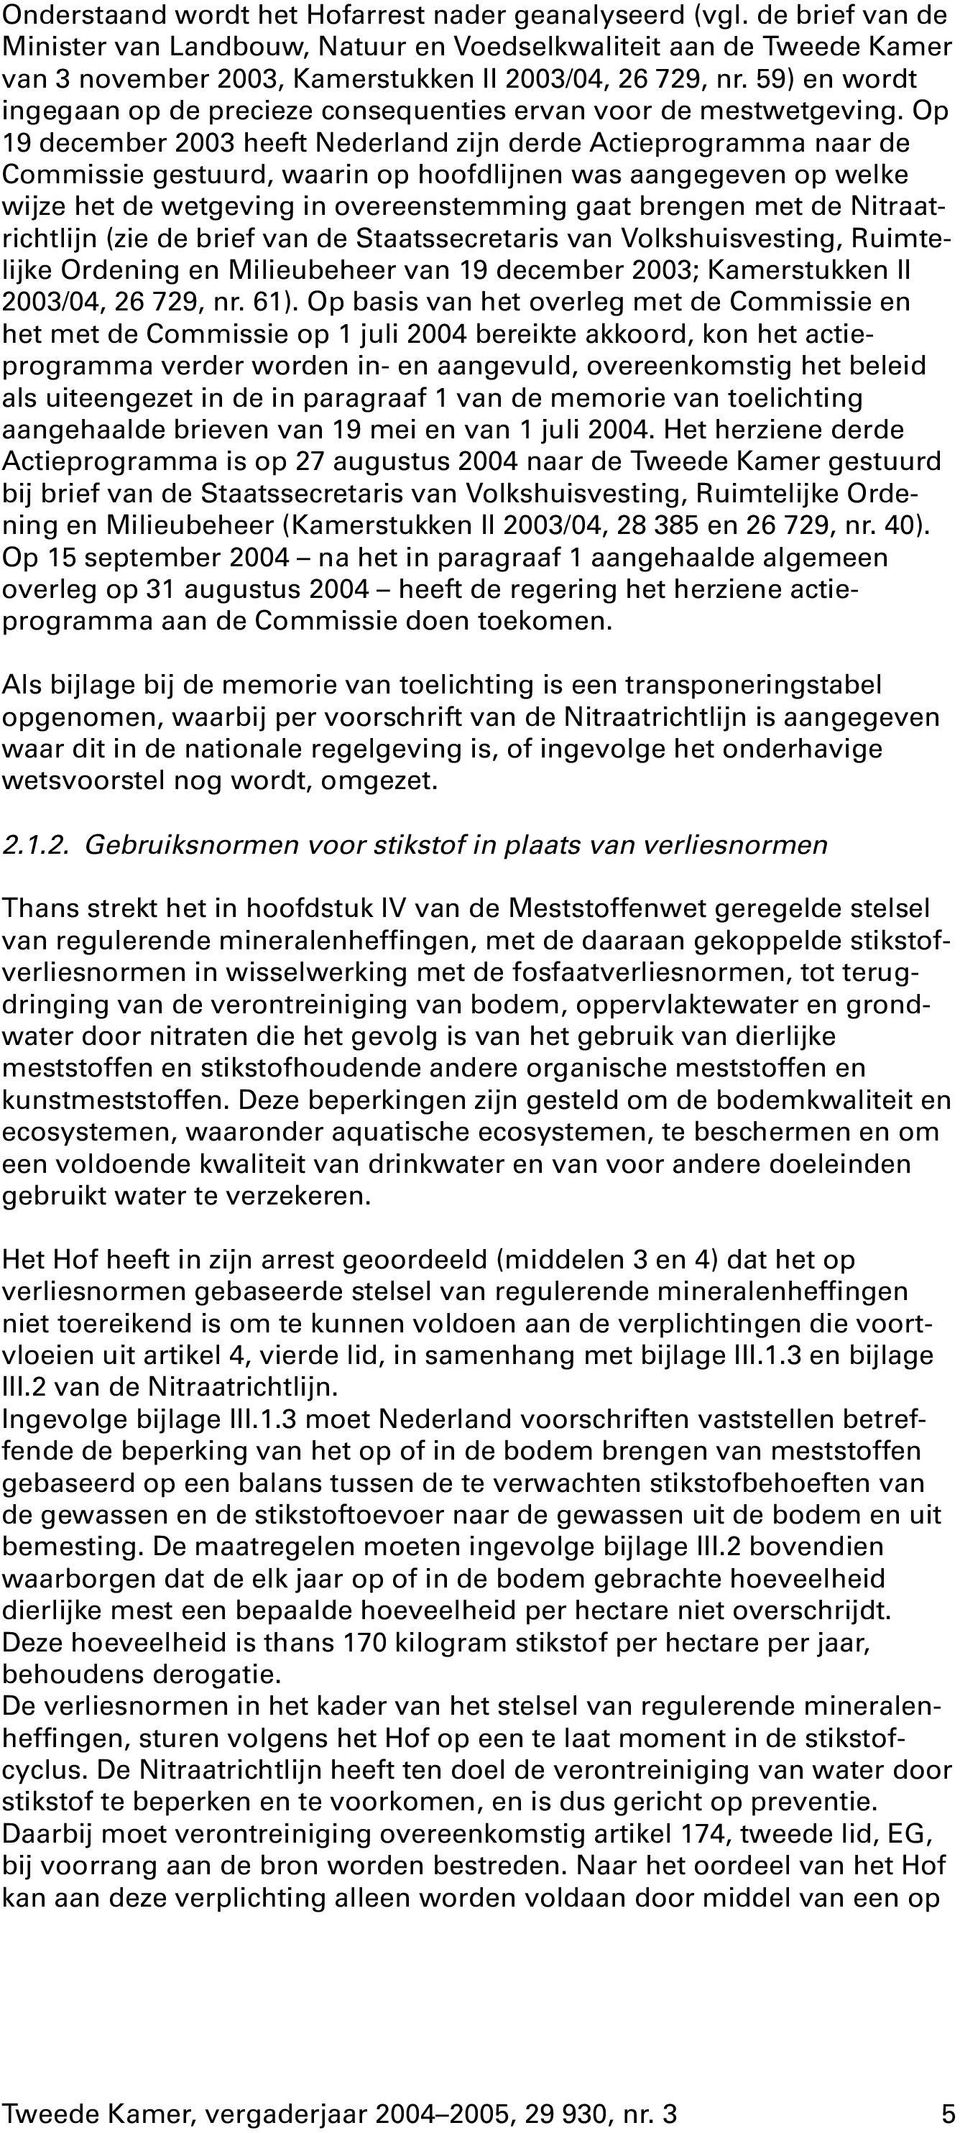 Op 19 december 2003 heeft Nederland zijn derde Actieprogramma naar de Commissie gestuurd, waarin op hoofdlijnen was aangegeven op welke wijze het de wetgeving in overeenstemming gaat brengen met de